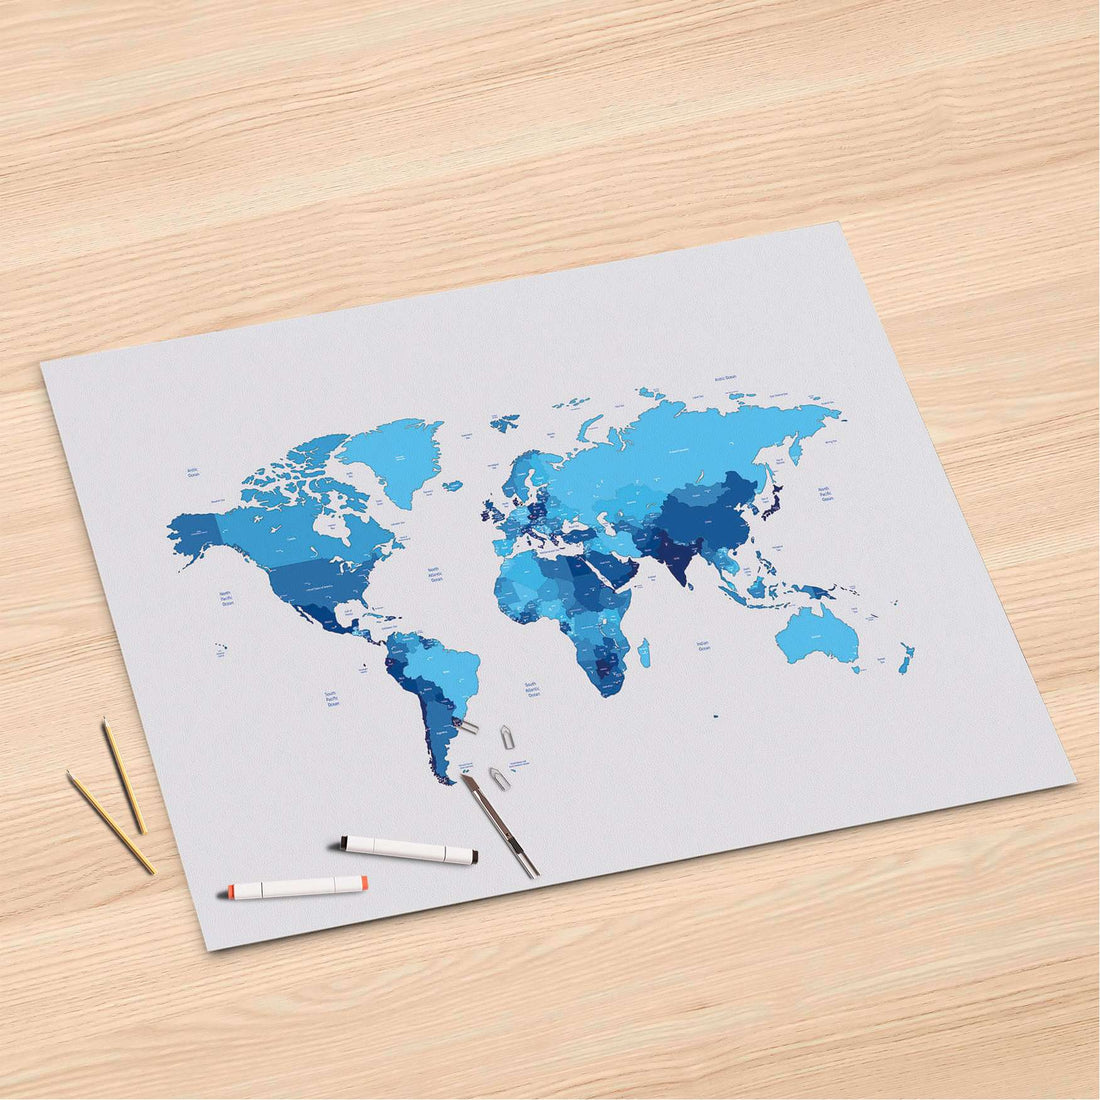 Folienbogen Politische Weltkarte - 120x80 cm